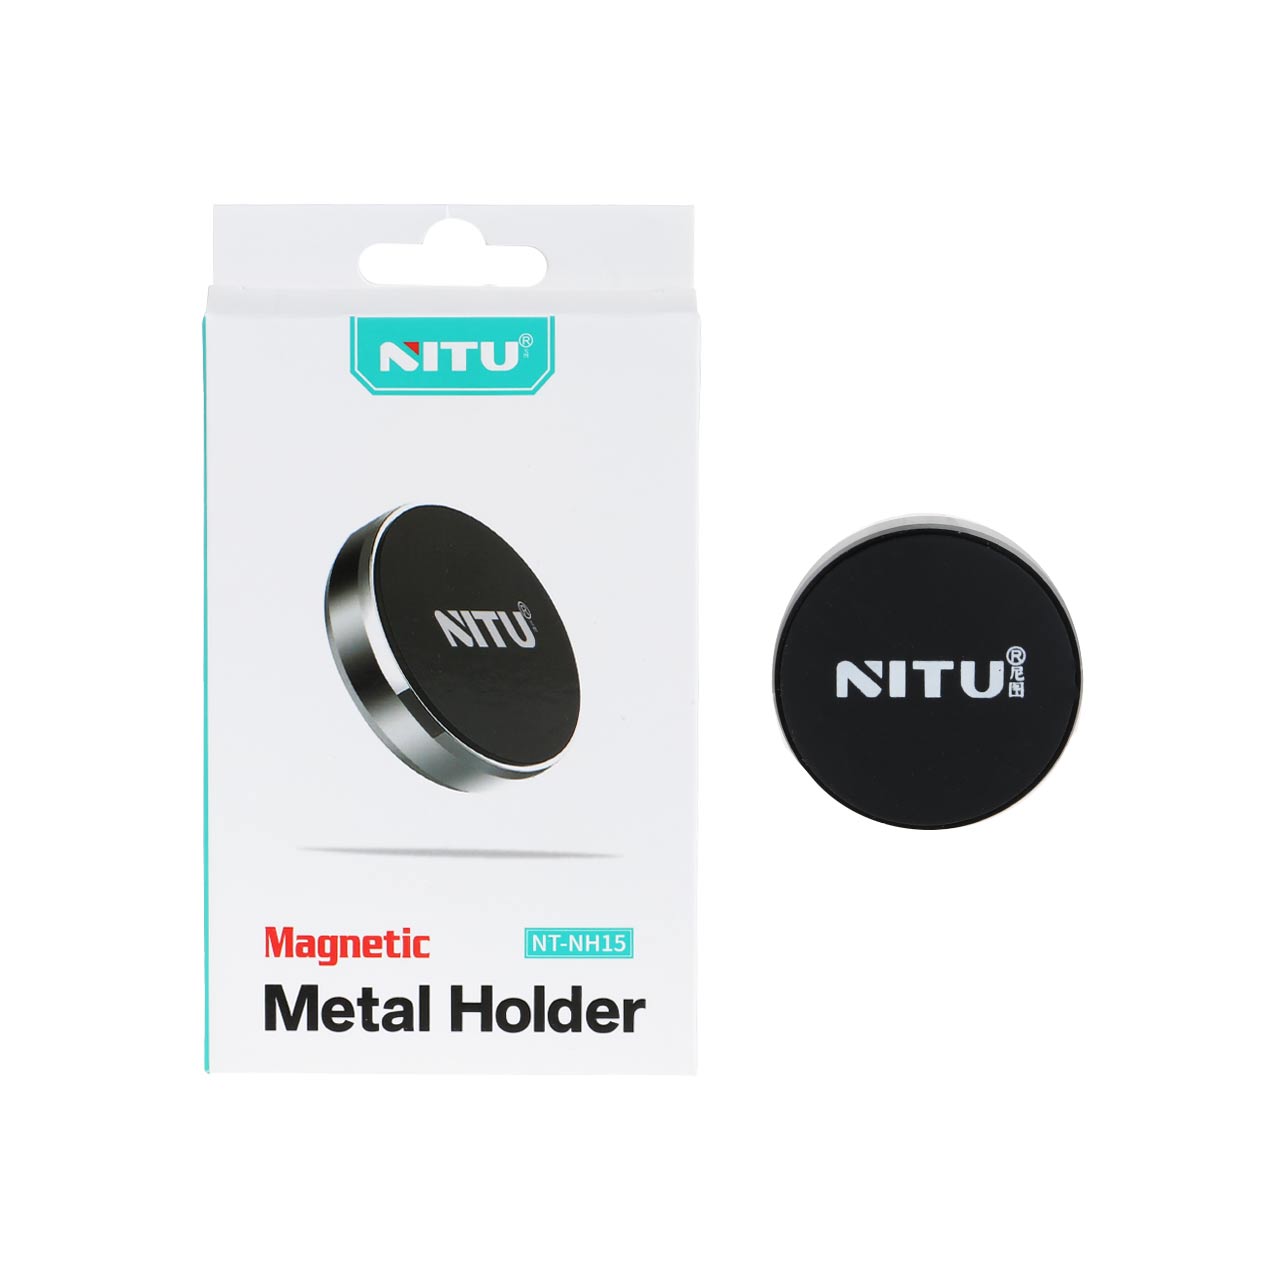 هولدر گوشی موبایل مگنتی NITU مدل NT-NH15 - مشکی